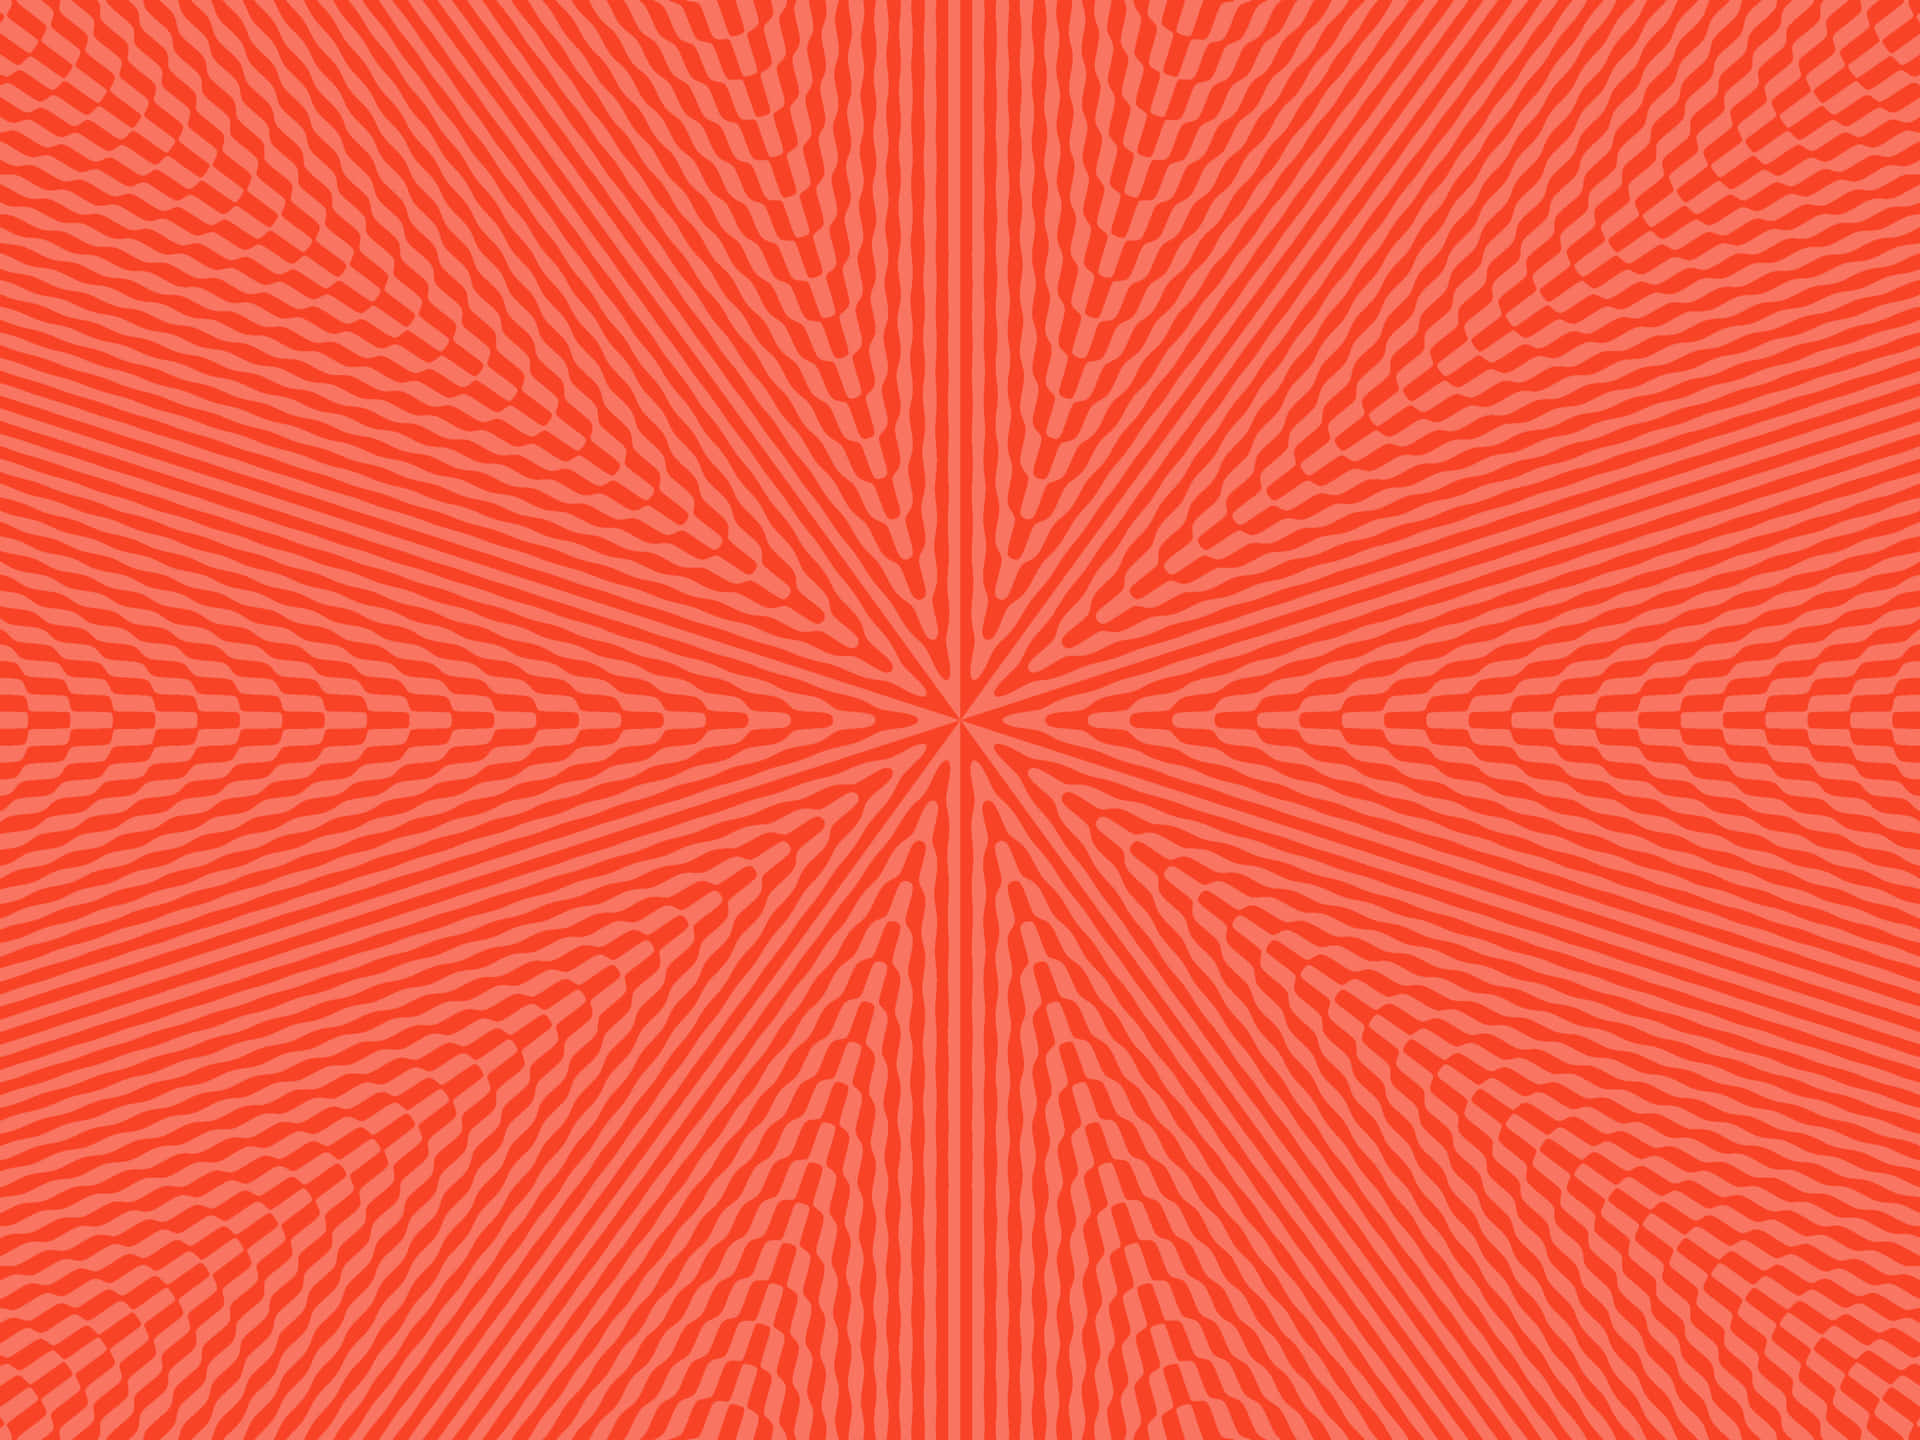 red orange burst background